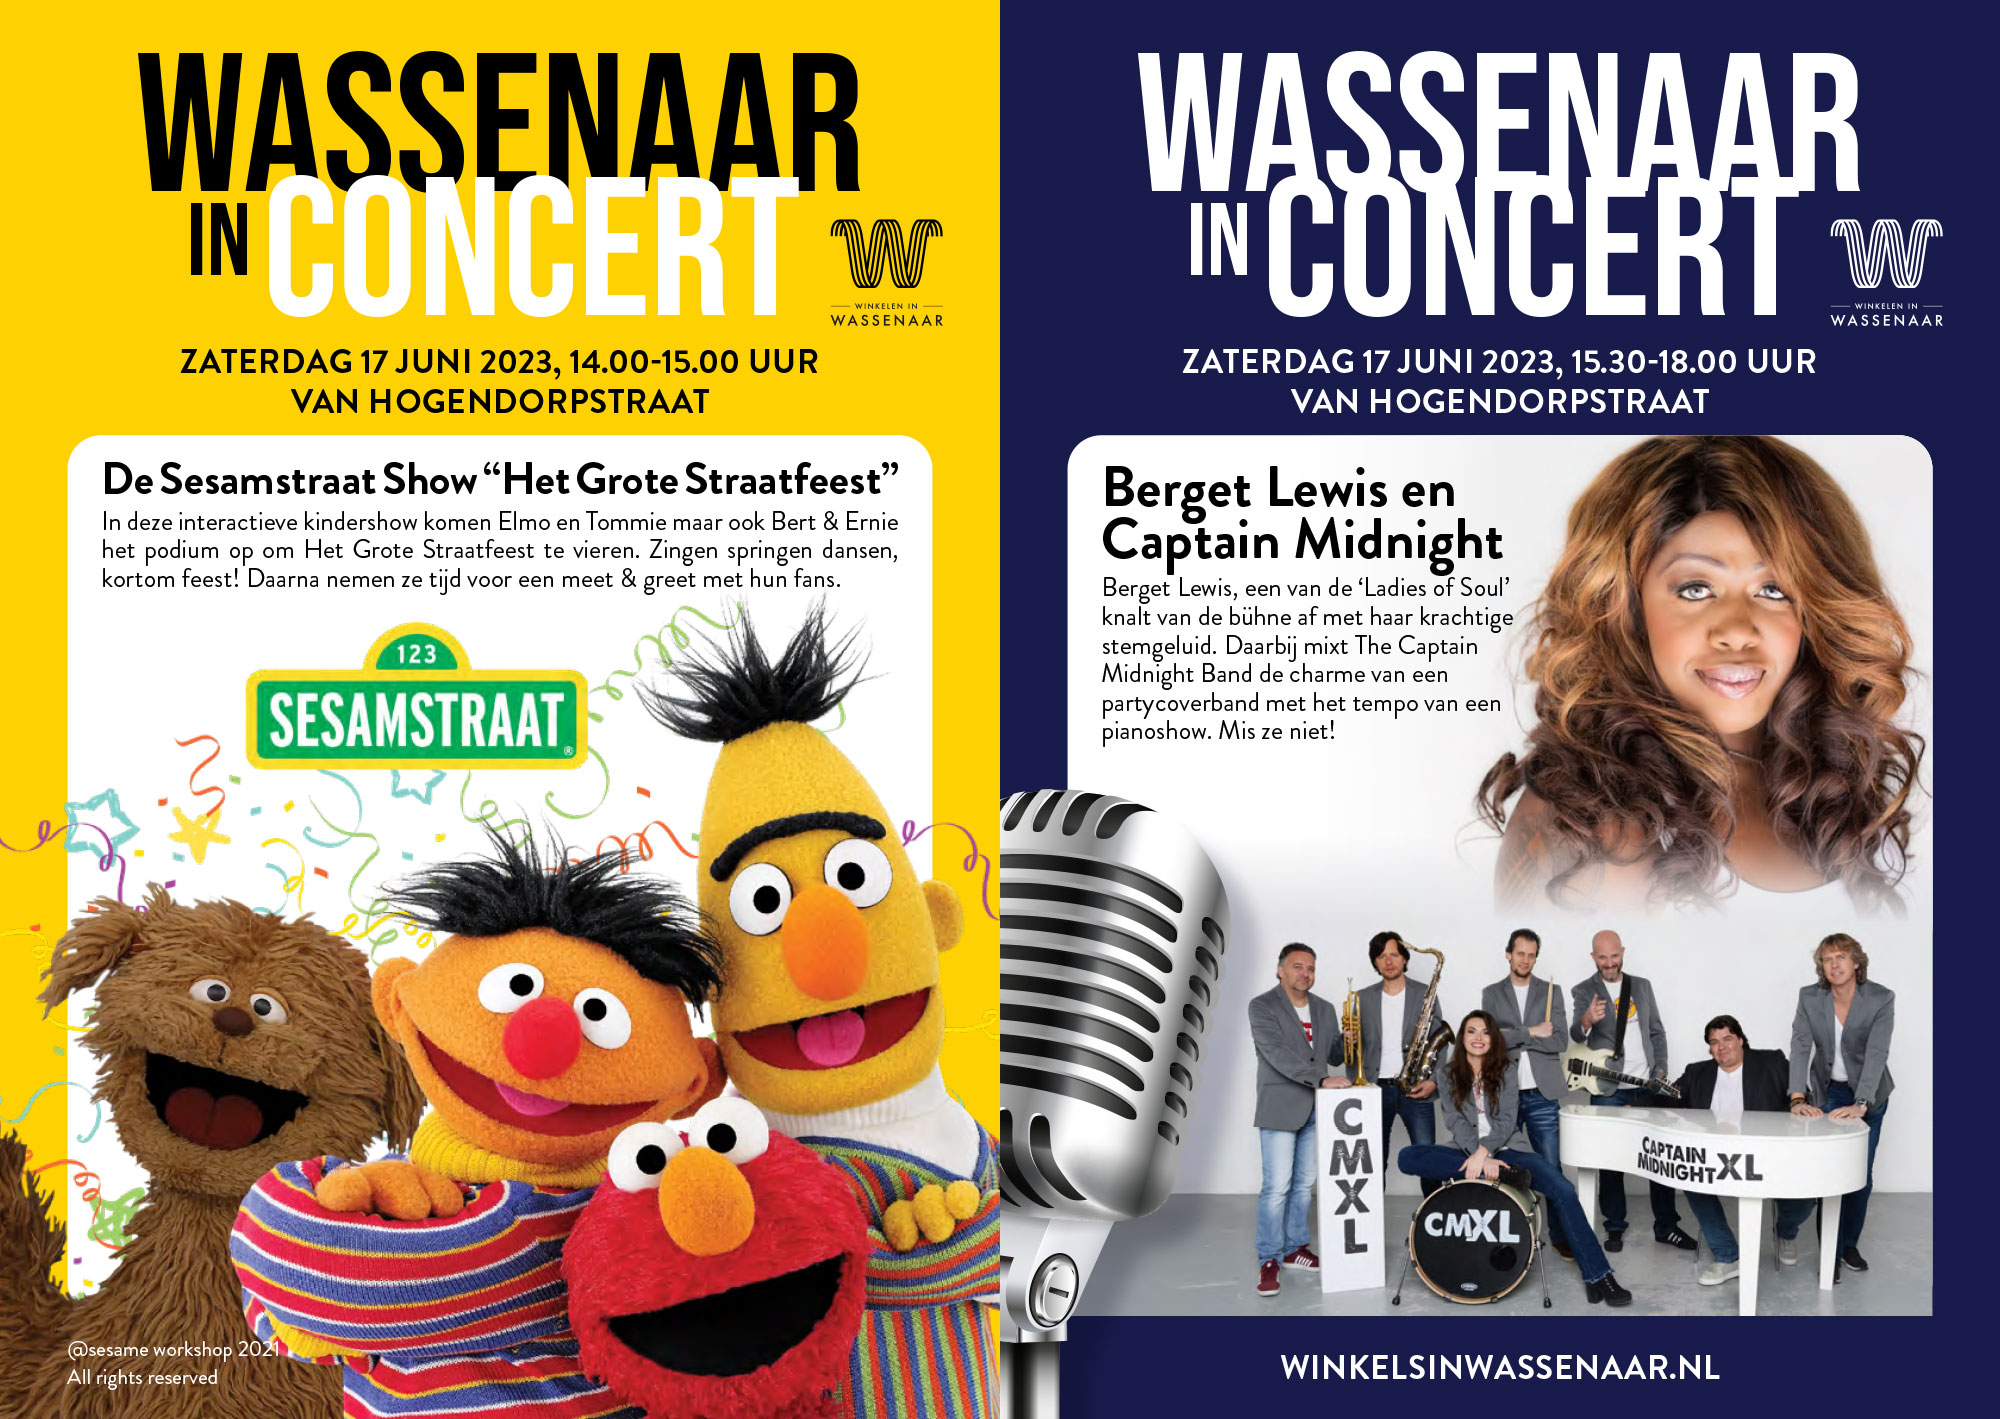 Wassenaar in Concert 17 juni 2023 met De Sesamstraat Show & Berget Lewis